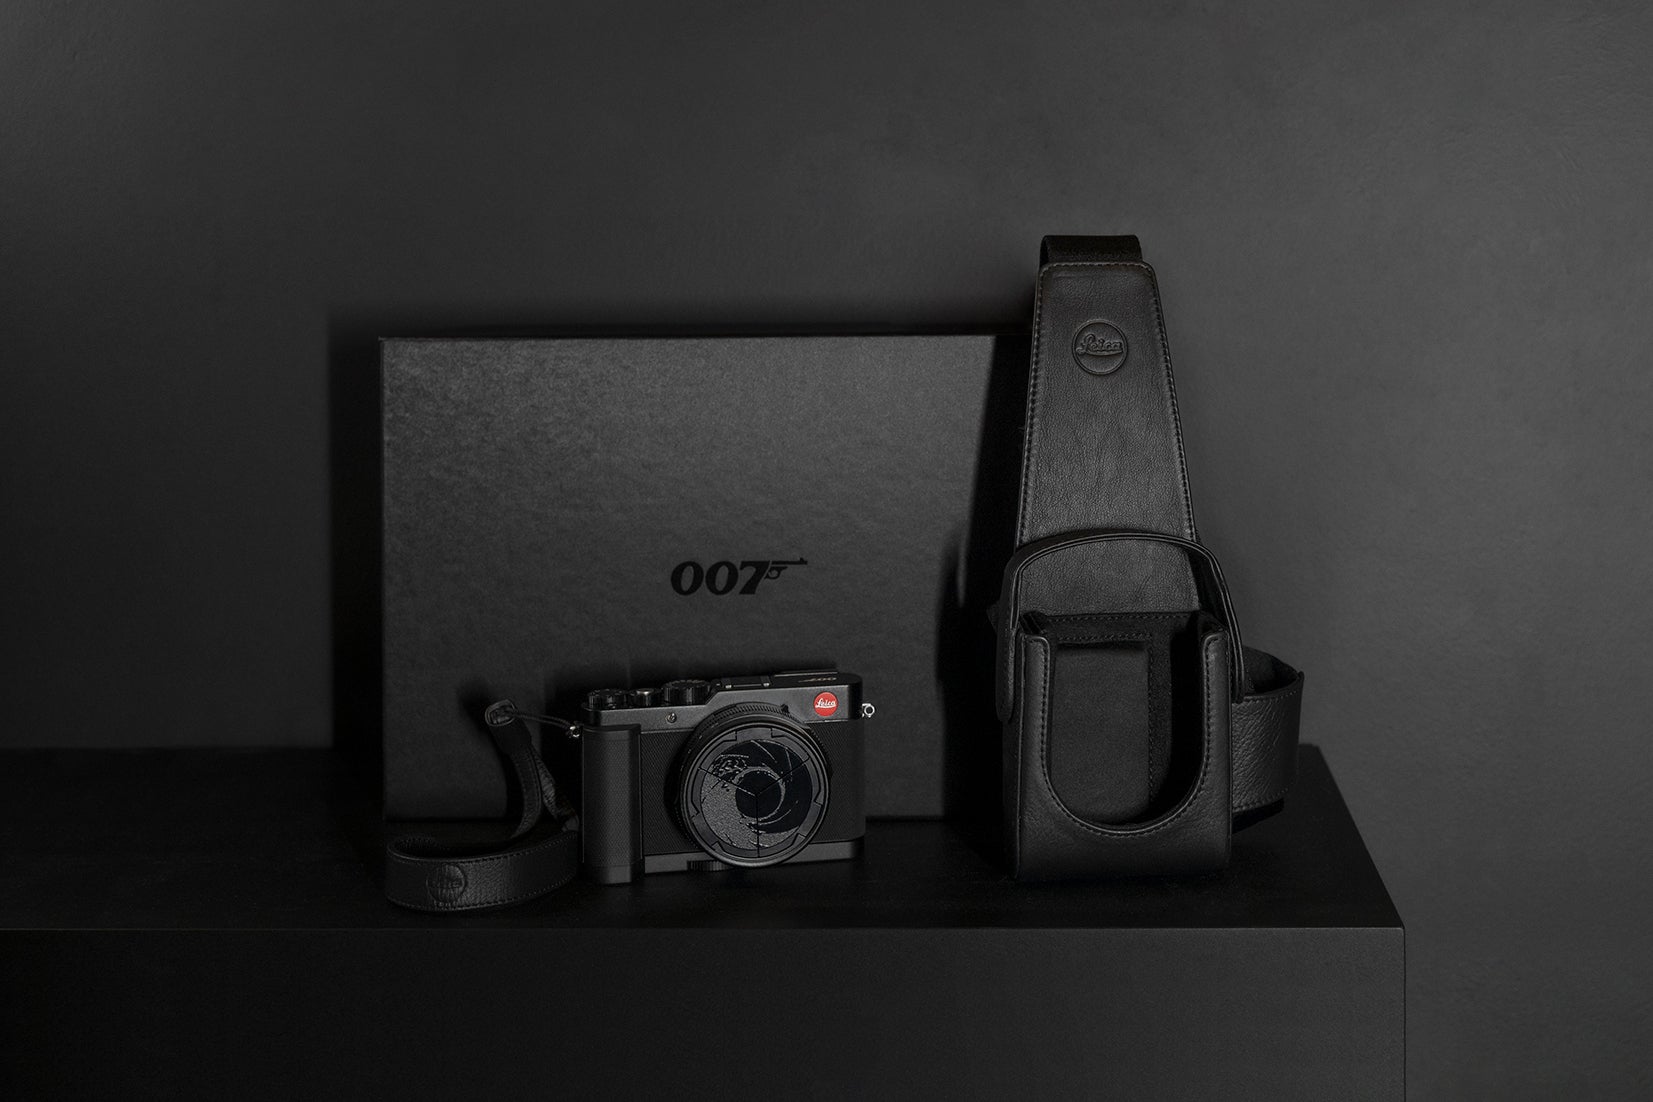 Leica ra mắt máy ảnh D-Lux 7 phiên bản 007 Edition đặc biệt kỷ niệm 60 năm điệp viên James Bond